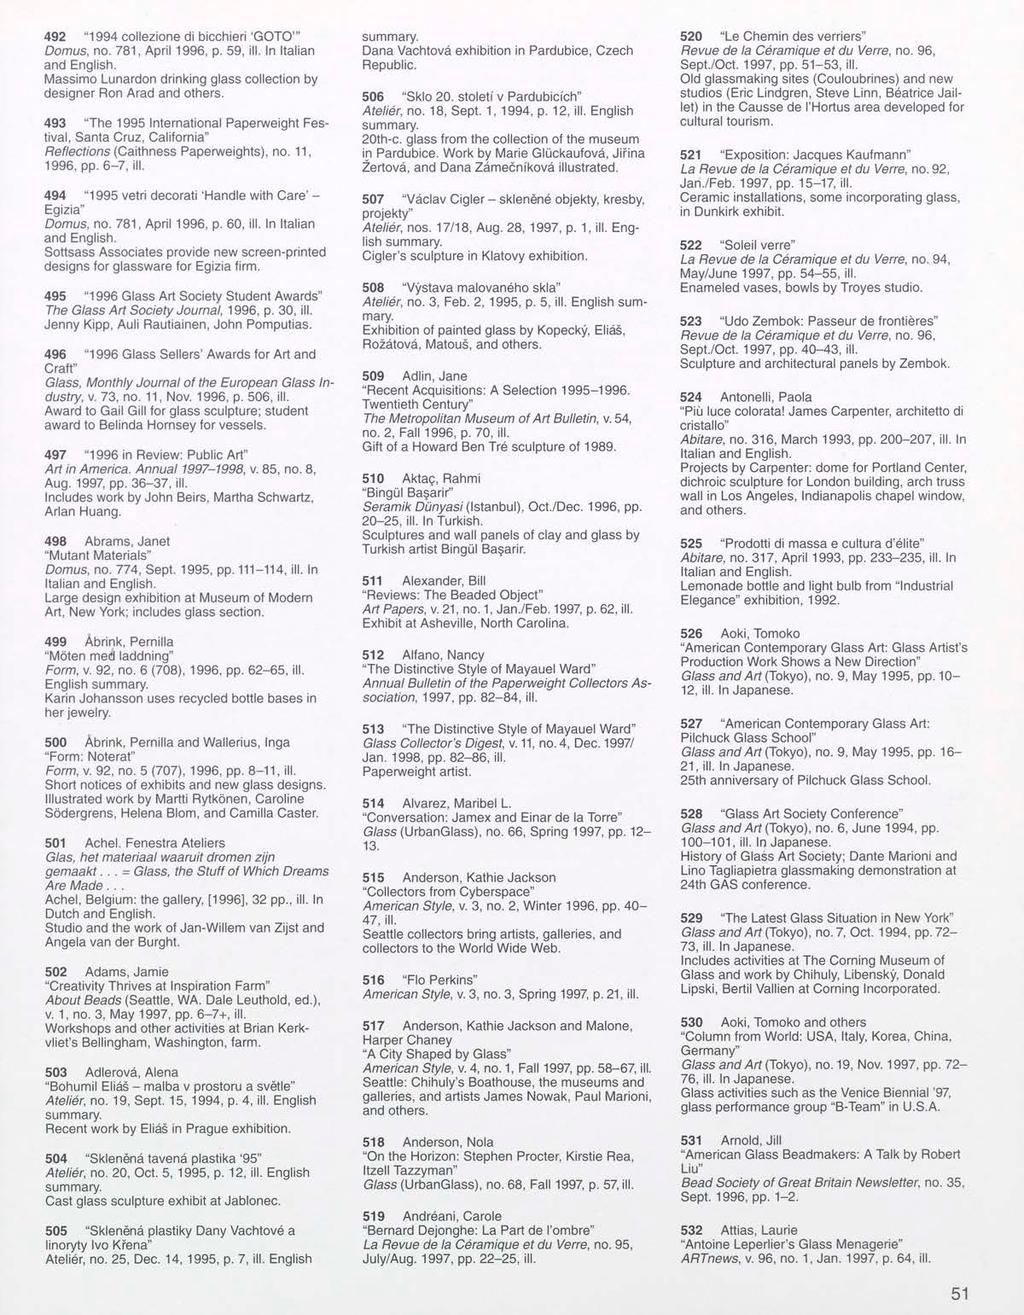 492 "1994 collezione di bicchieri 'GOTO'" Domus, no. 781, April 1996, p. 59, ill. In Italian Massimo Lunardon drinking glass collection by designer Ron Arad and others.